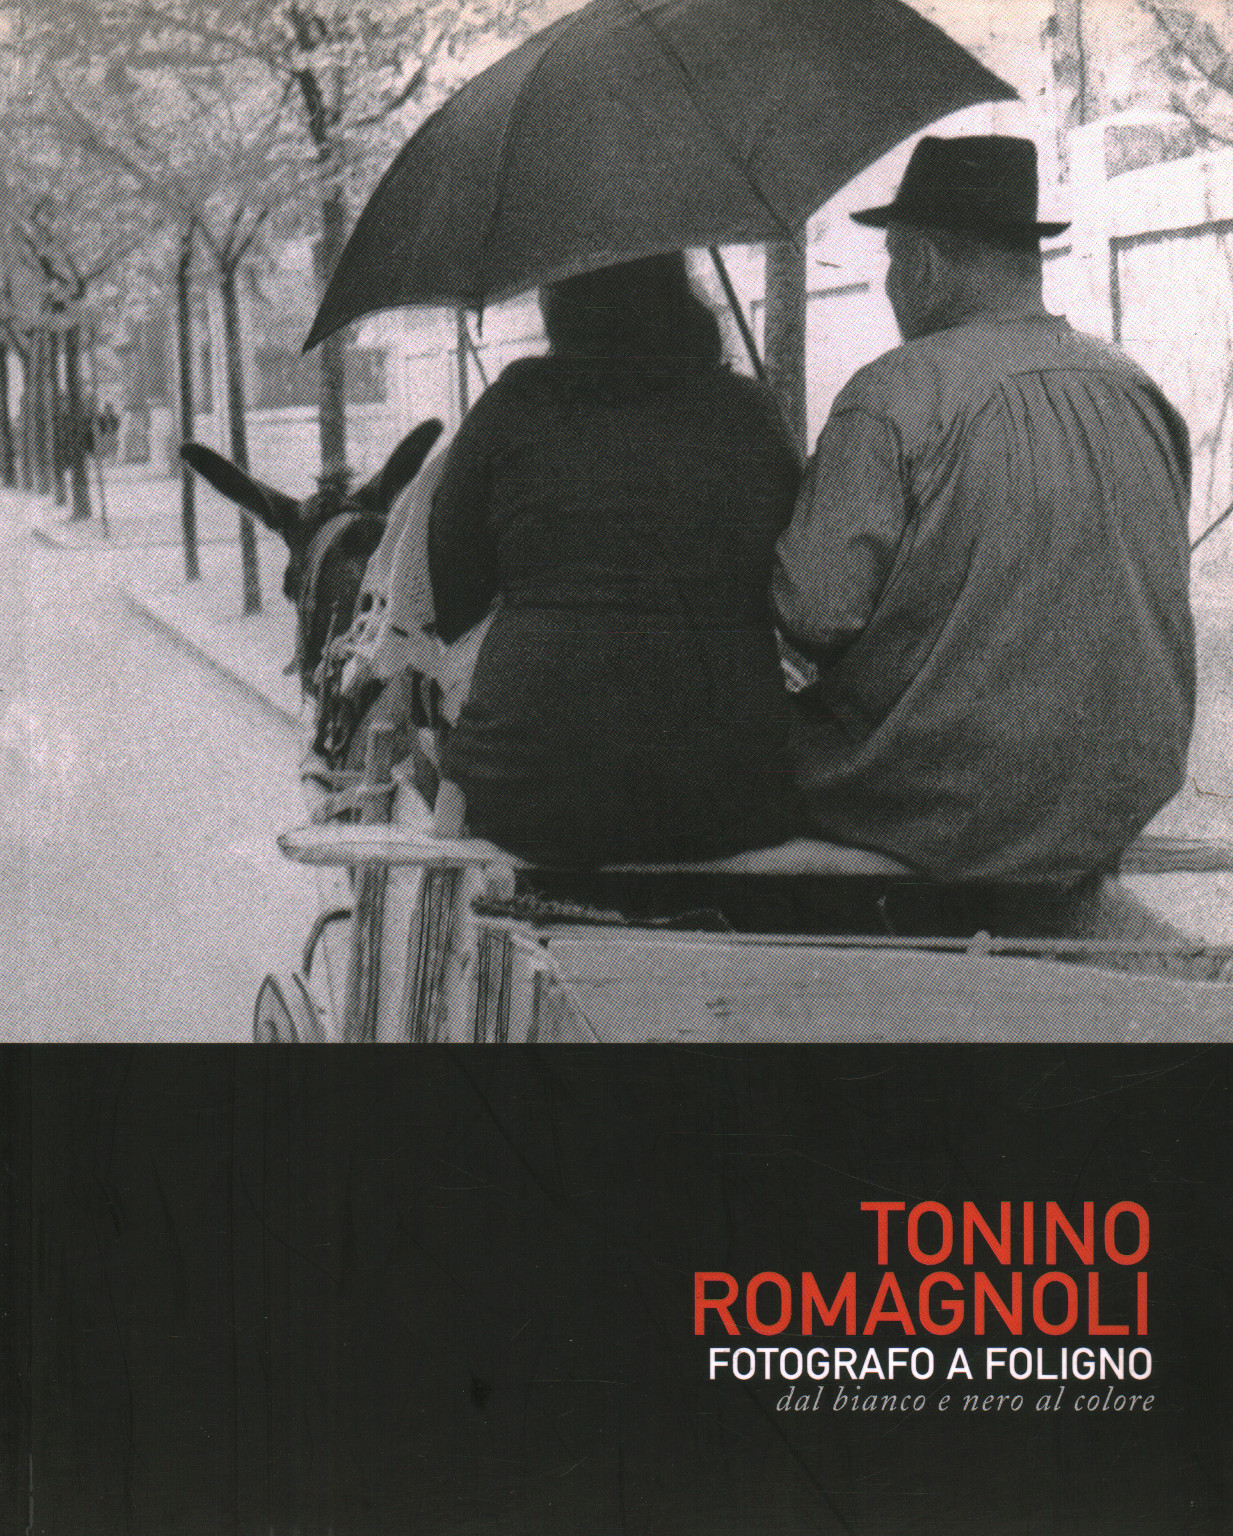 Tonino Romagnoli. Photographe à Foligno. Blanc , s.un.